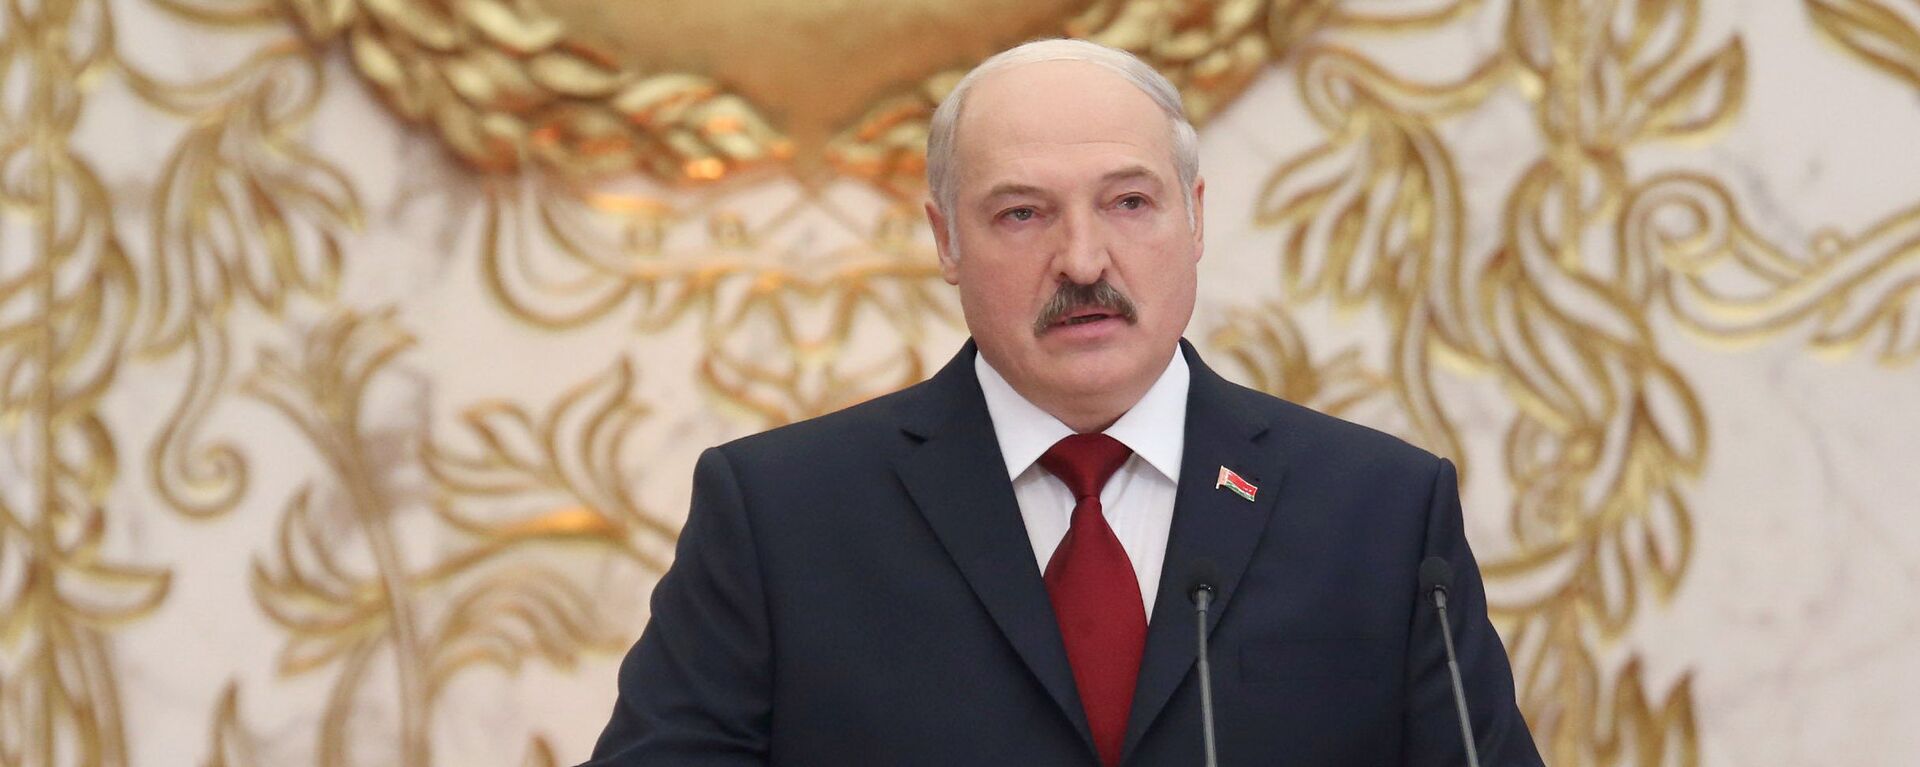 Inauguracija beloruskog predsednika Aleksandra Lukašenka - Sputnik Srbija, 1920, 27.11.2020